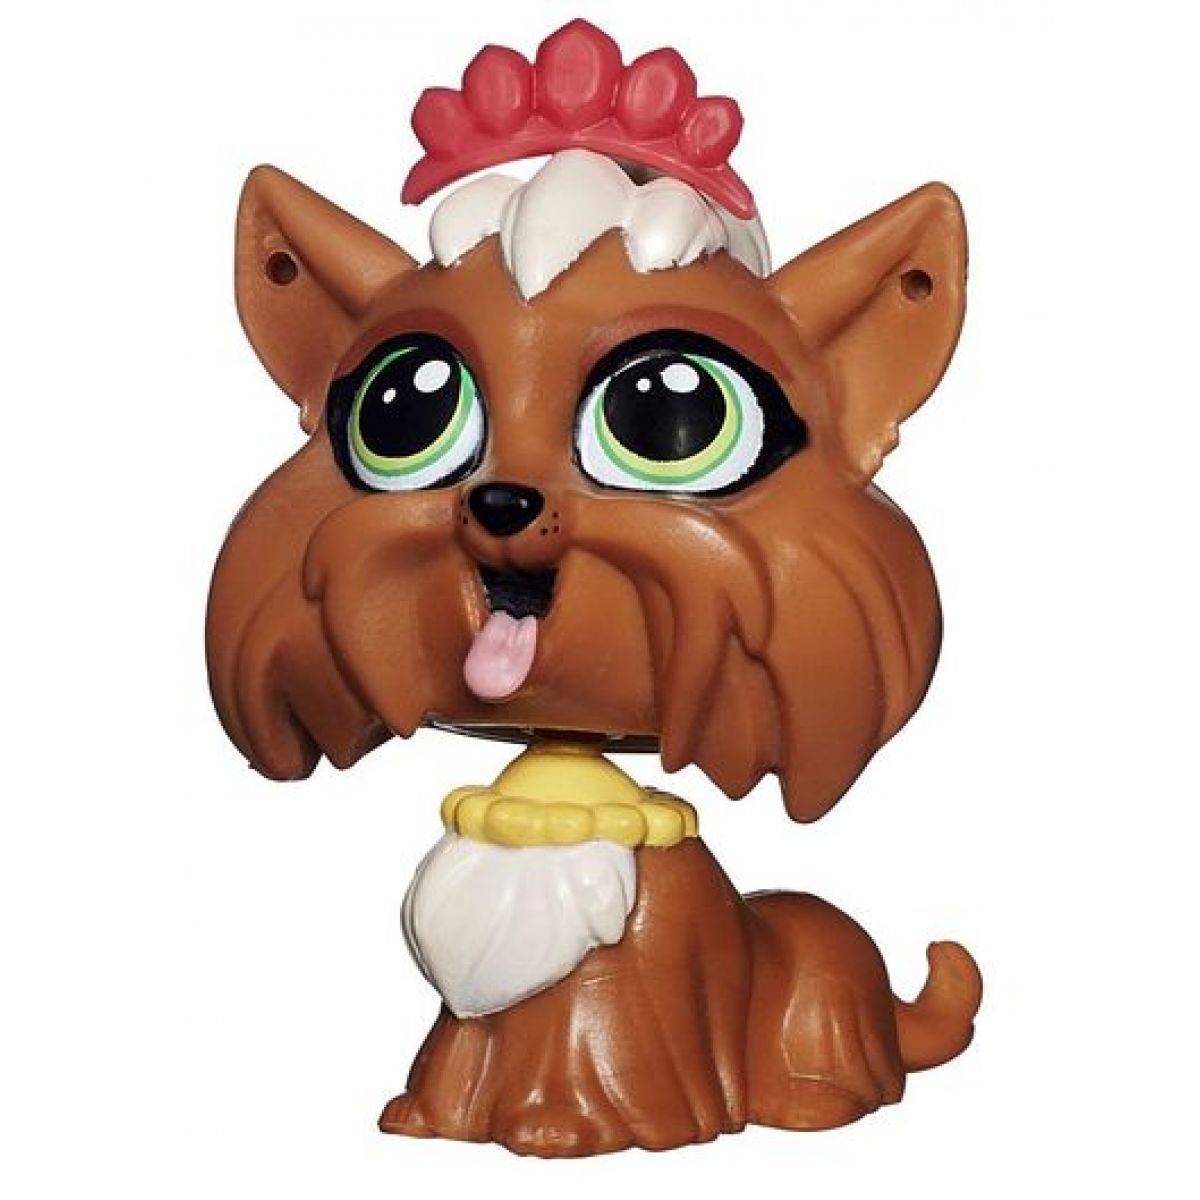 Littlest Pet Shop jednotlivá zvířátka - Terri Bowman